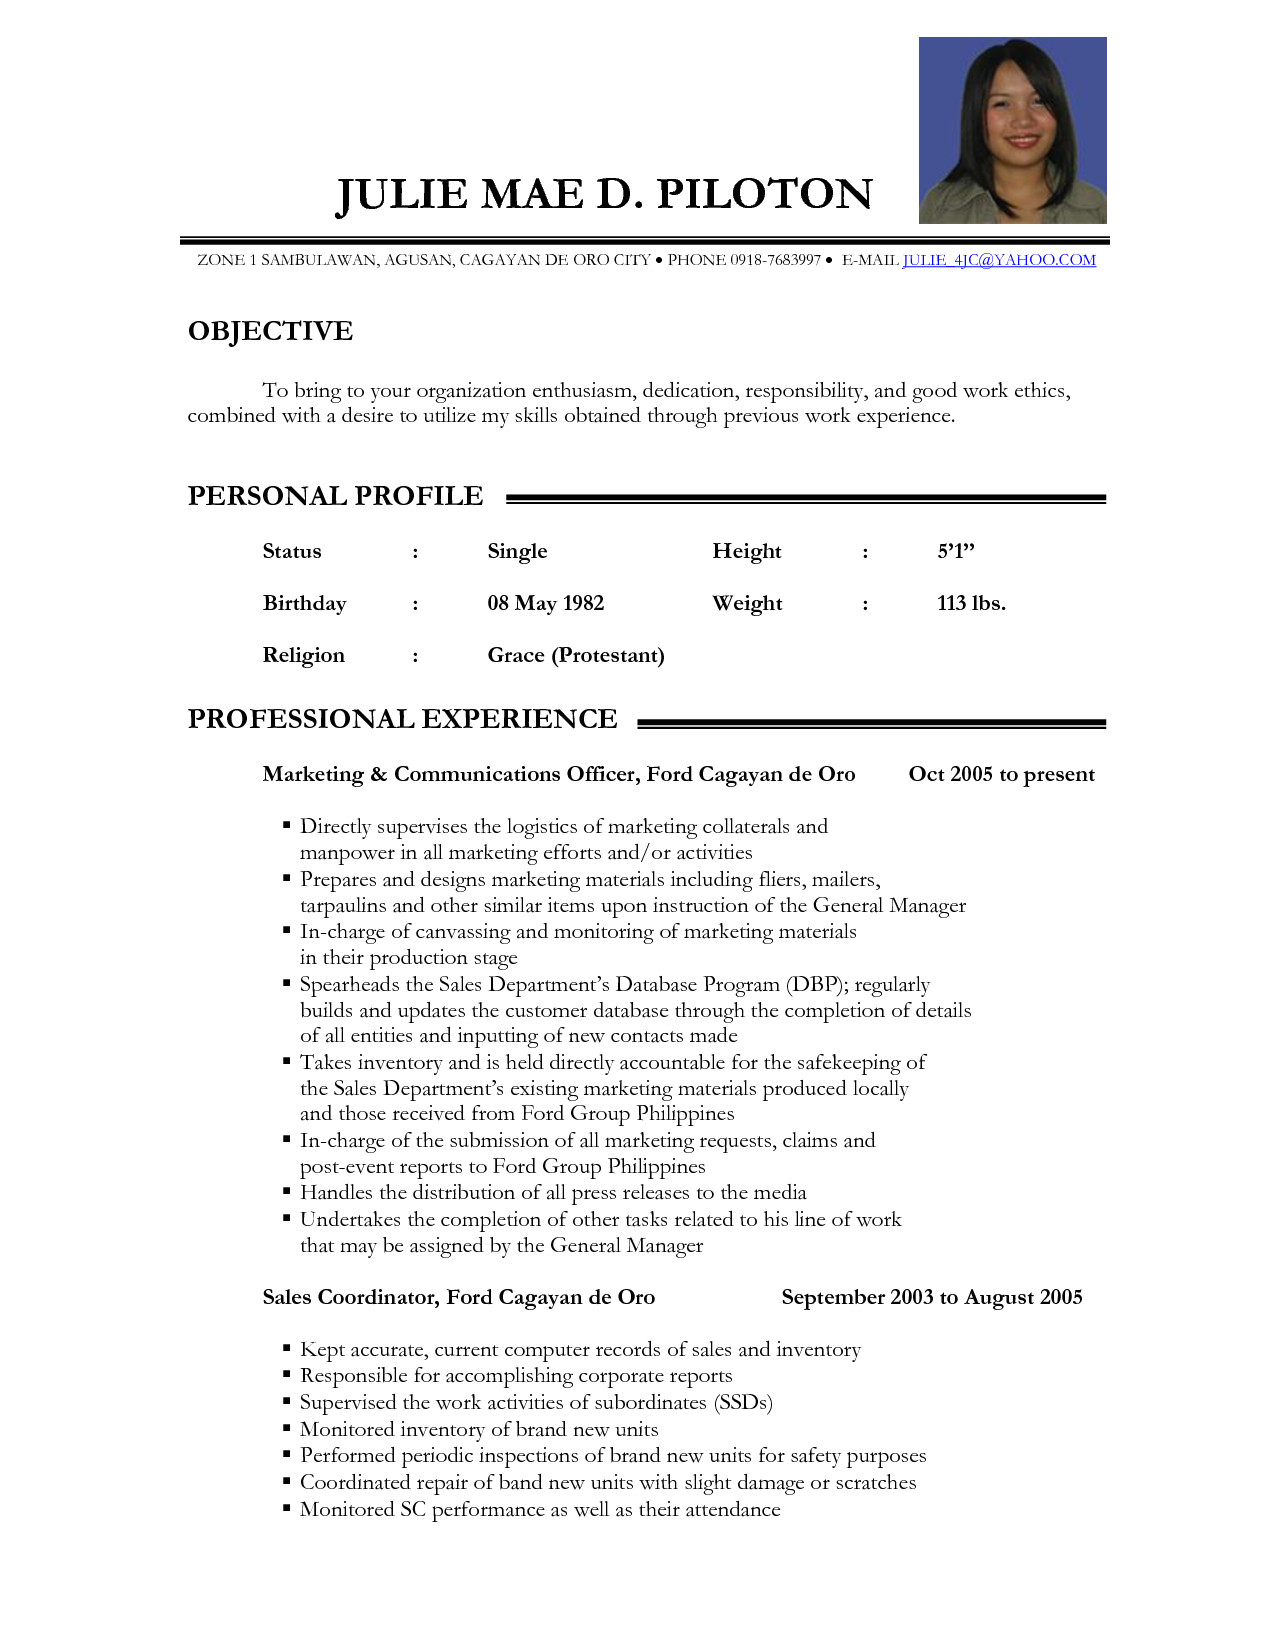 12 resume for teacher applicant